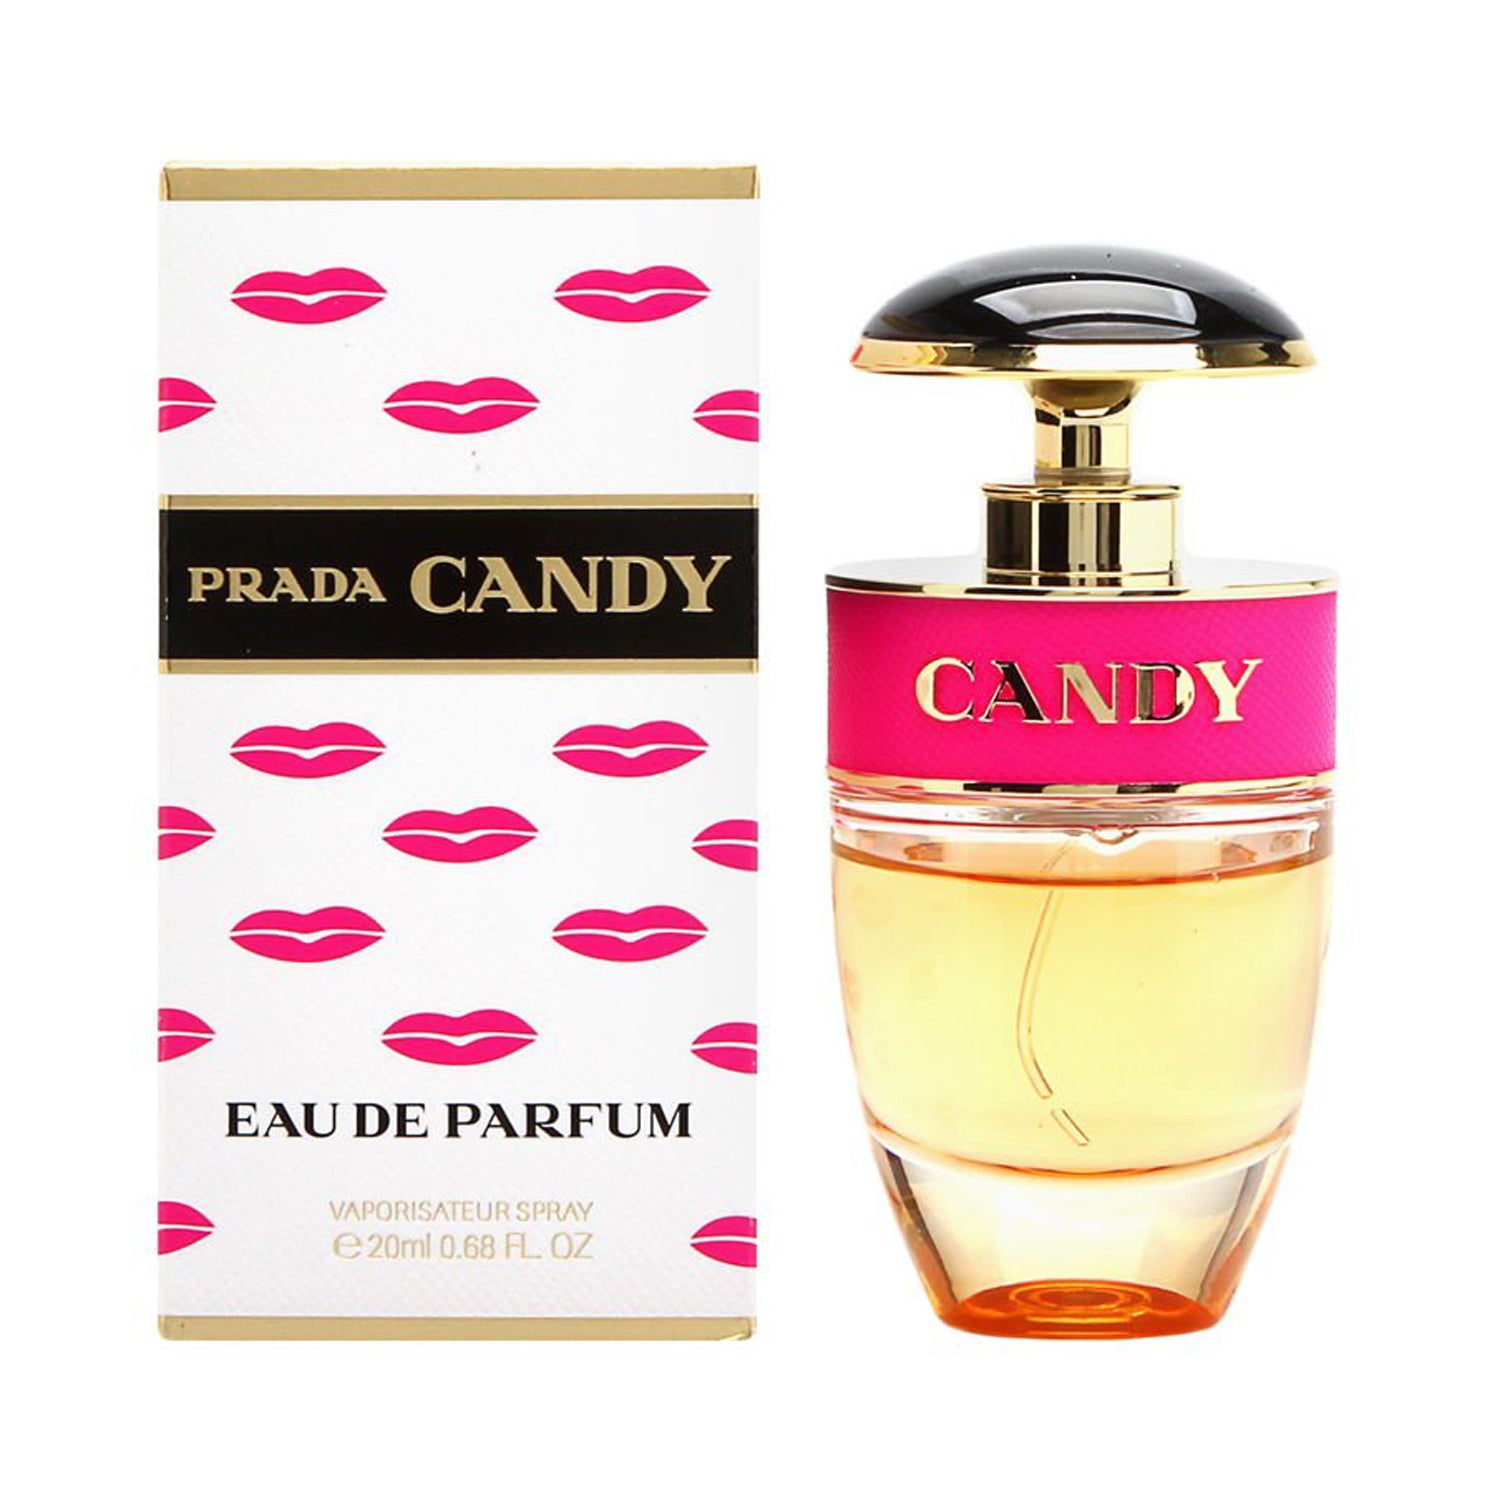 Prada Candy Eau de Parfum Spray 20ml